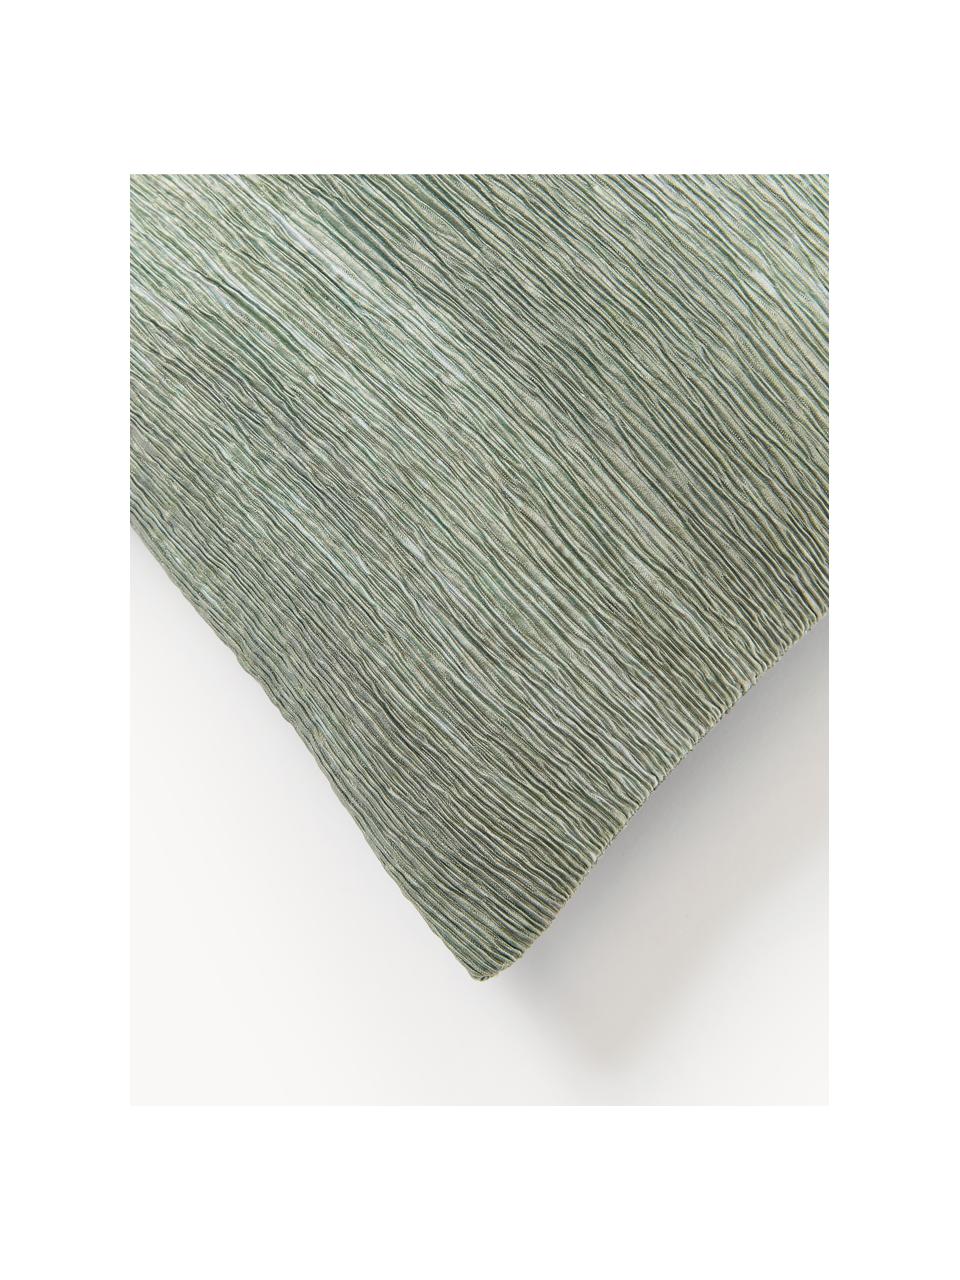 Housse de coussin 40x40 texturée Aline, 100 % polyester, Vert clair, larg. 40 x long. 40 cm